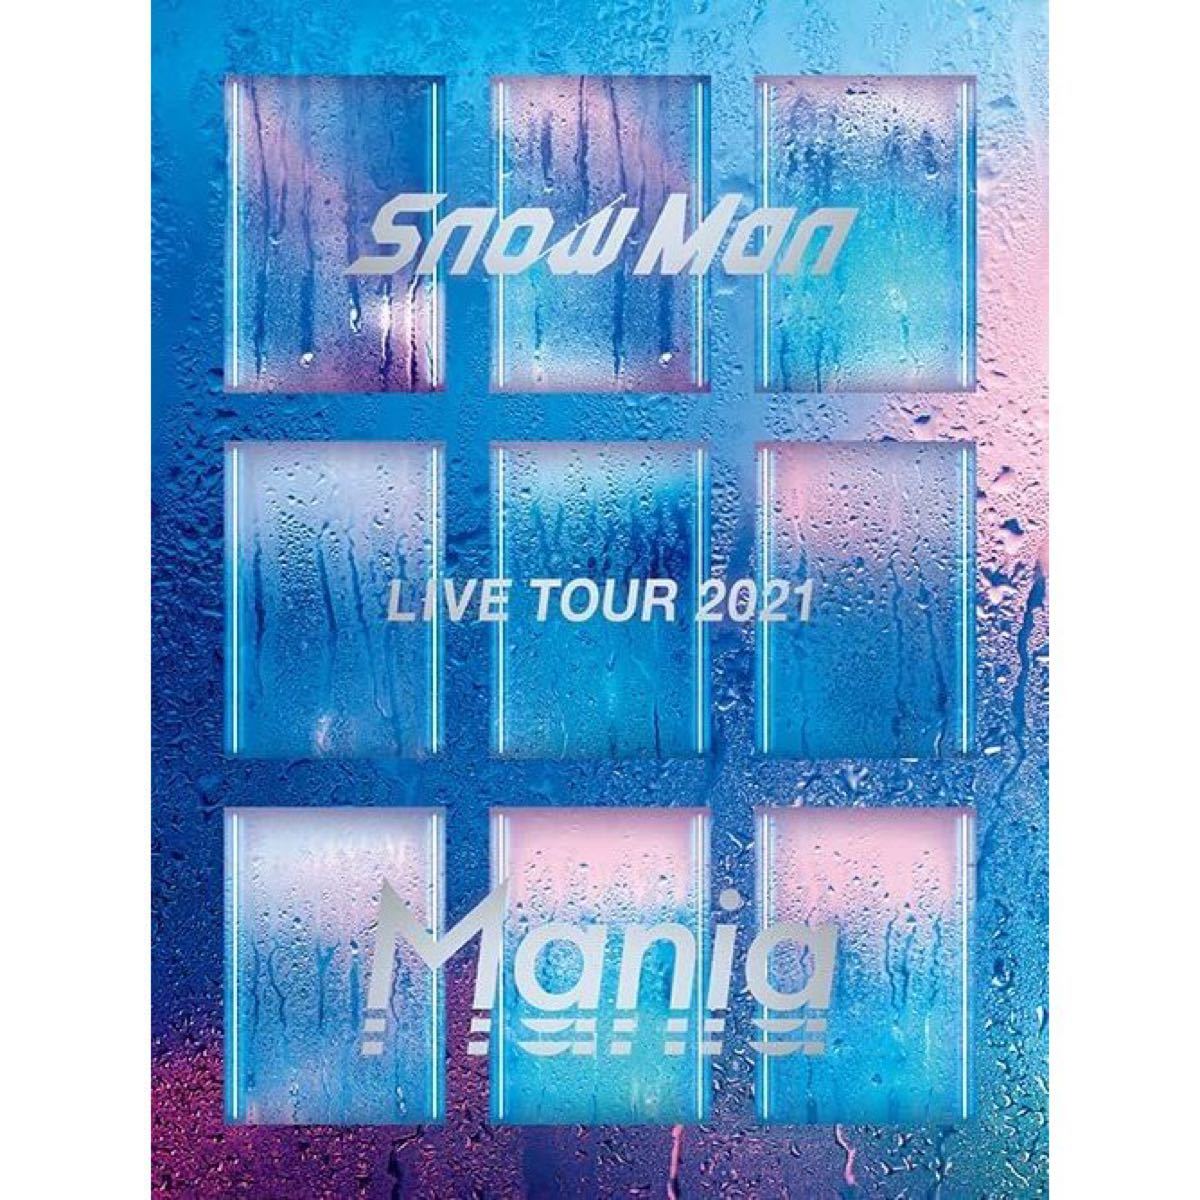 【新品】Snow Man LIVE TOUR 2021 Mania初回盤 DVD ミュージック DVD/ブルーレイ 本・音楽・ゲーム 値段交渉